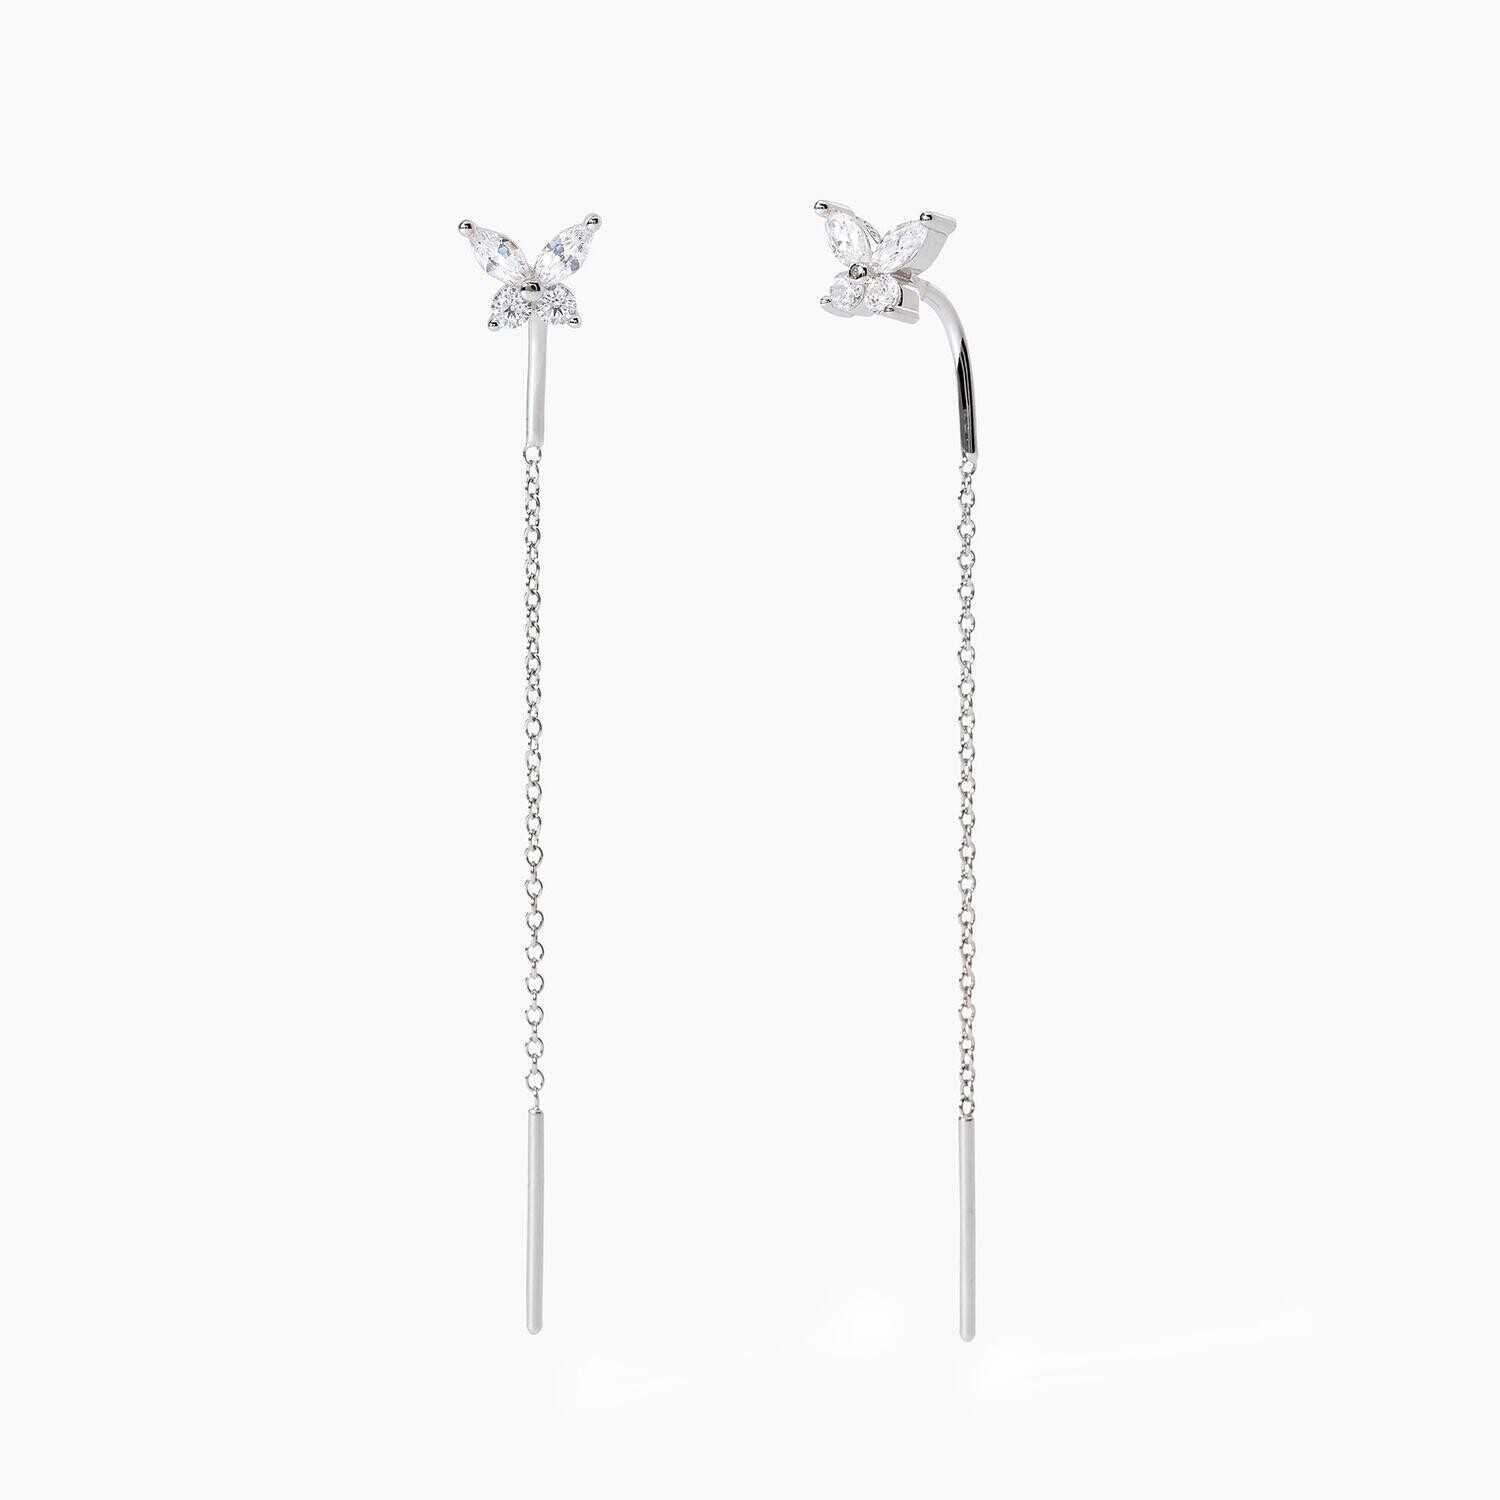 Orecchini pendenti in argento con farfalle SECRET GARDEN- Mabina Gioielli